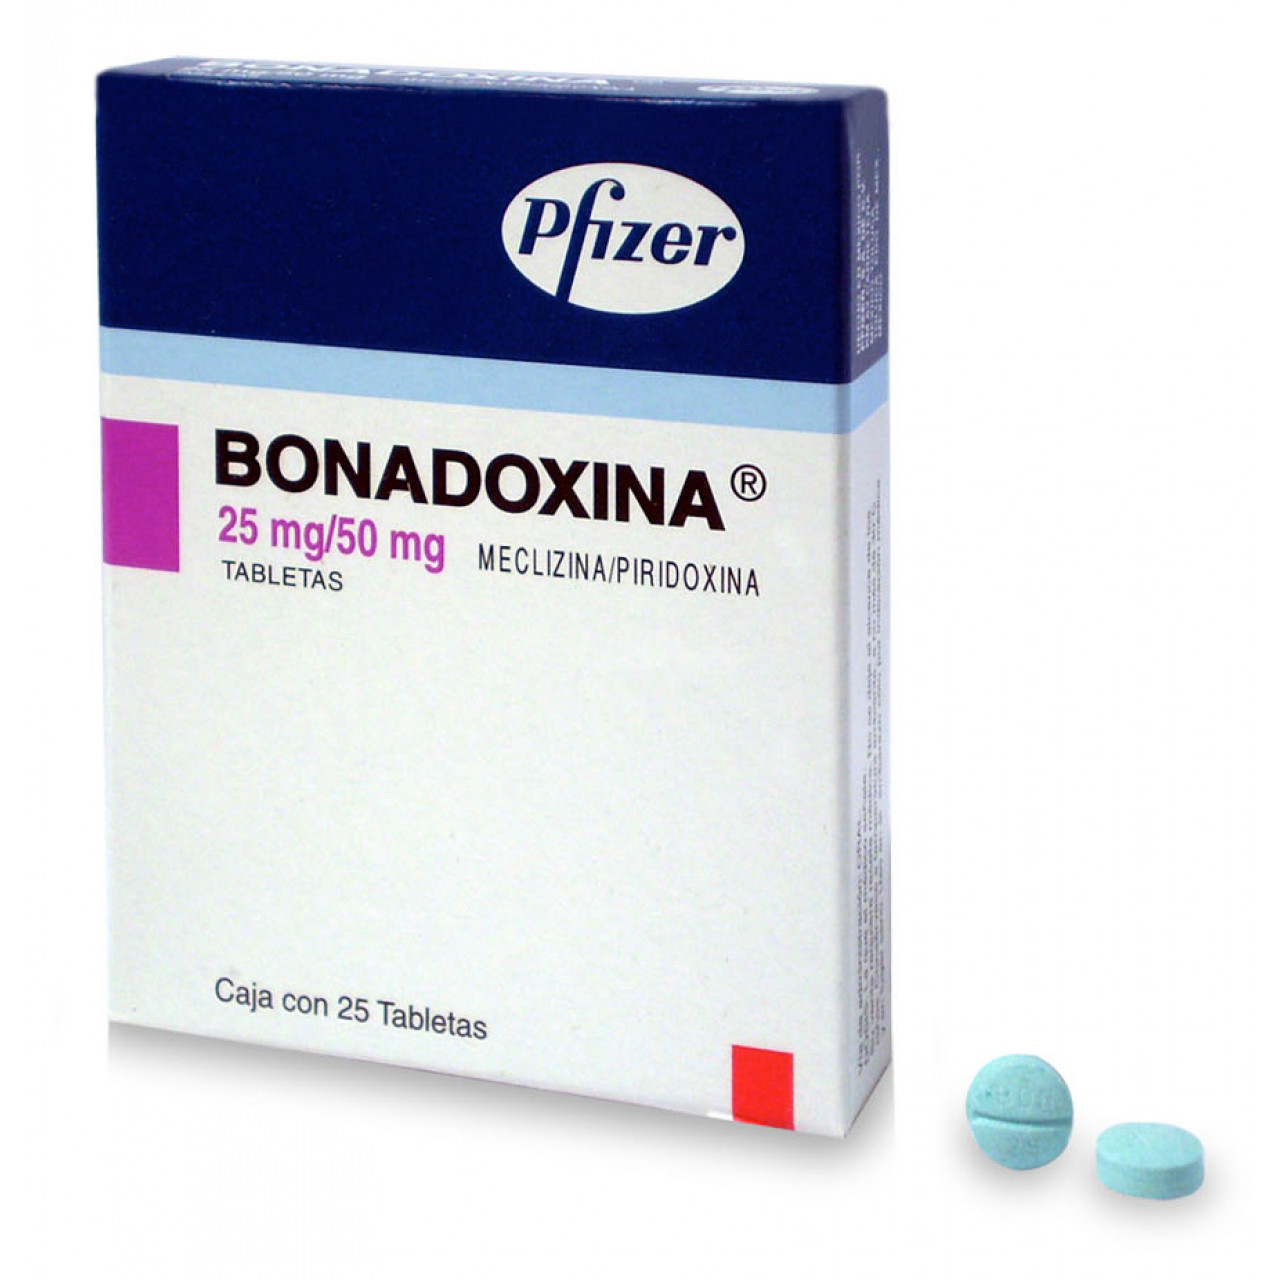 Bonadoxina: ¿Qué es y cuánto cuesta?